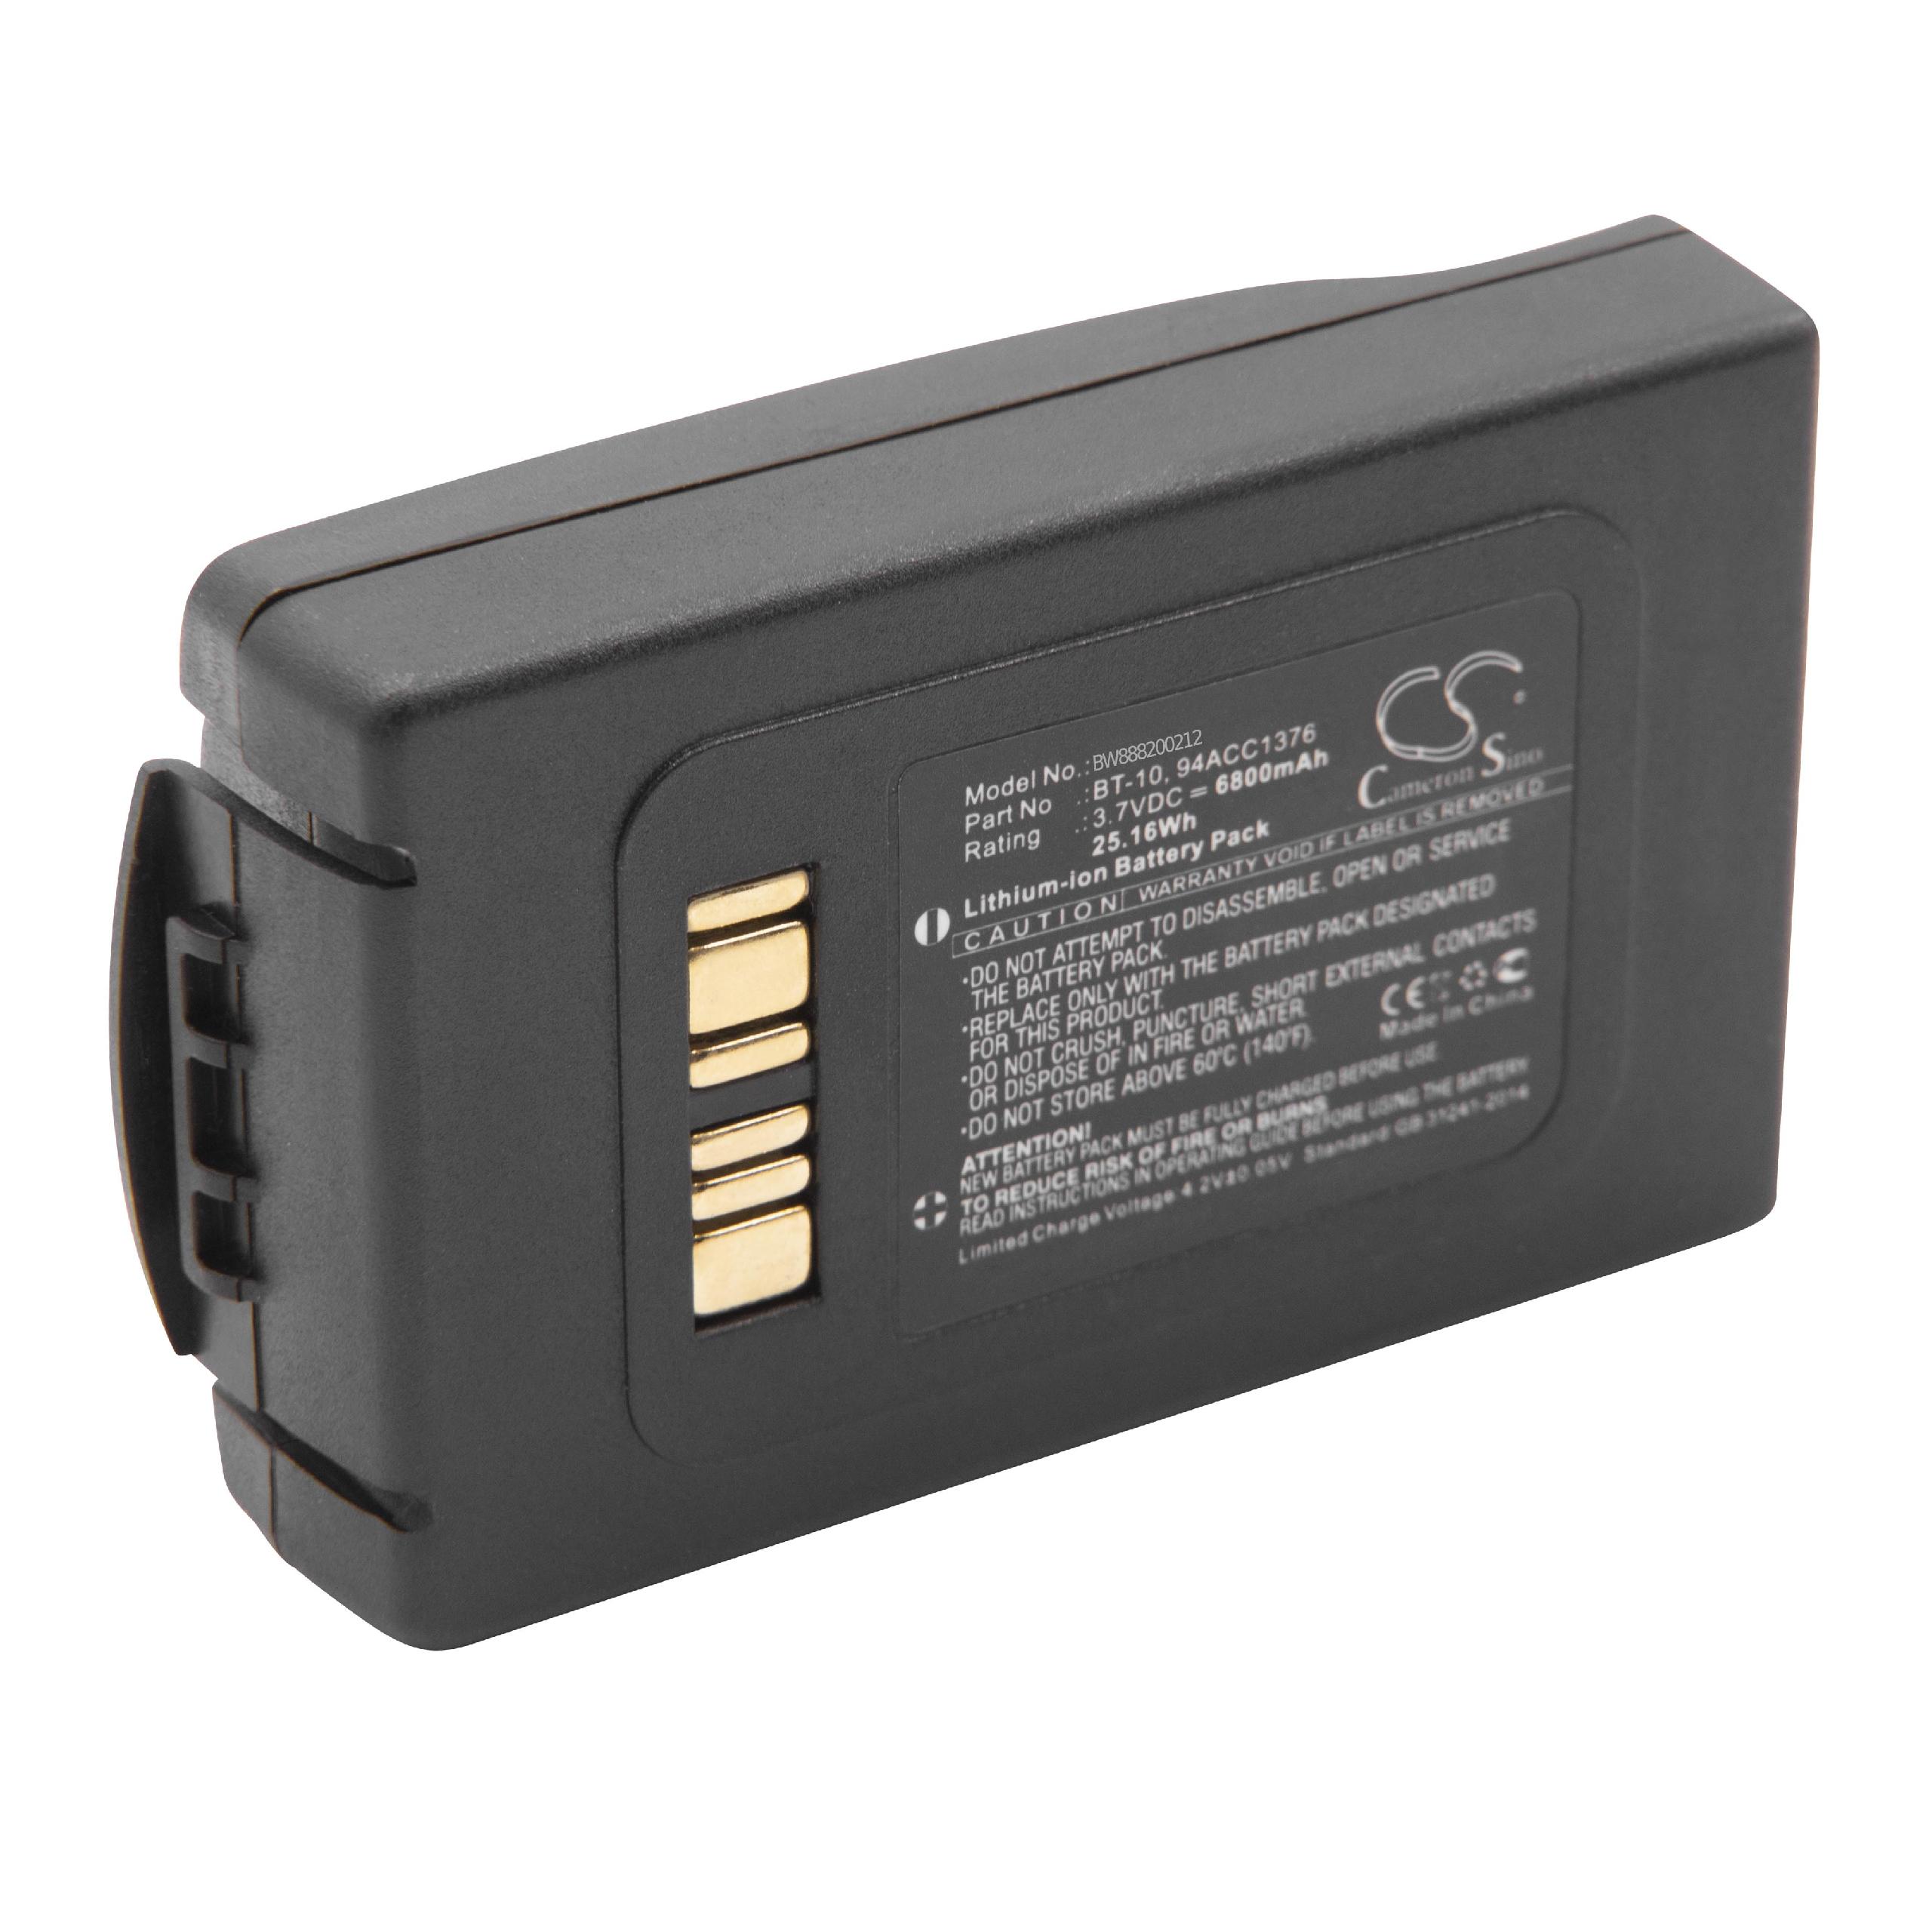 Batterie remplace Datalogic 94ACC0112, 94ACC1376, 94ACC1377 pour scanner de code-barre - 6800mAh 3,7V Li-ion